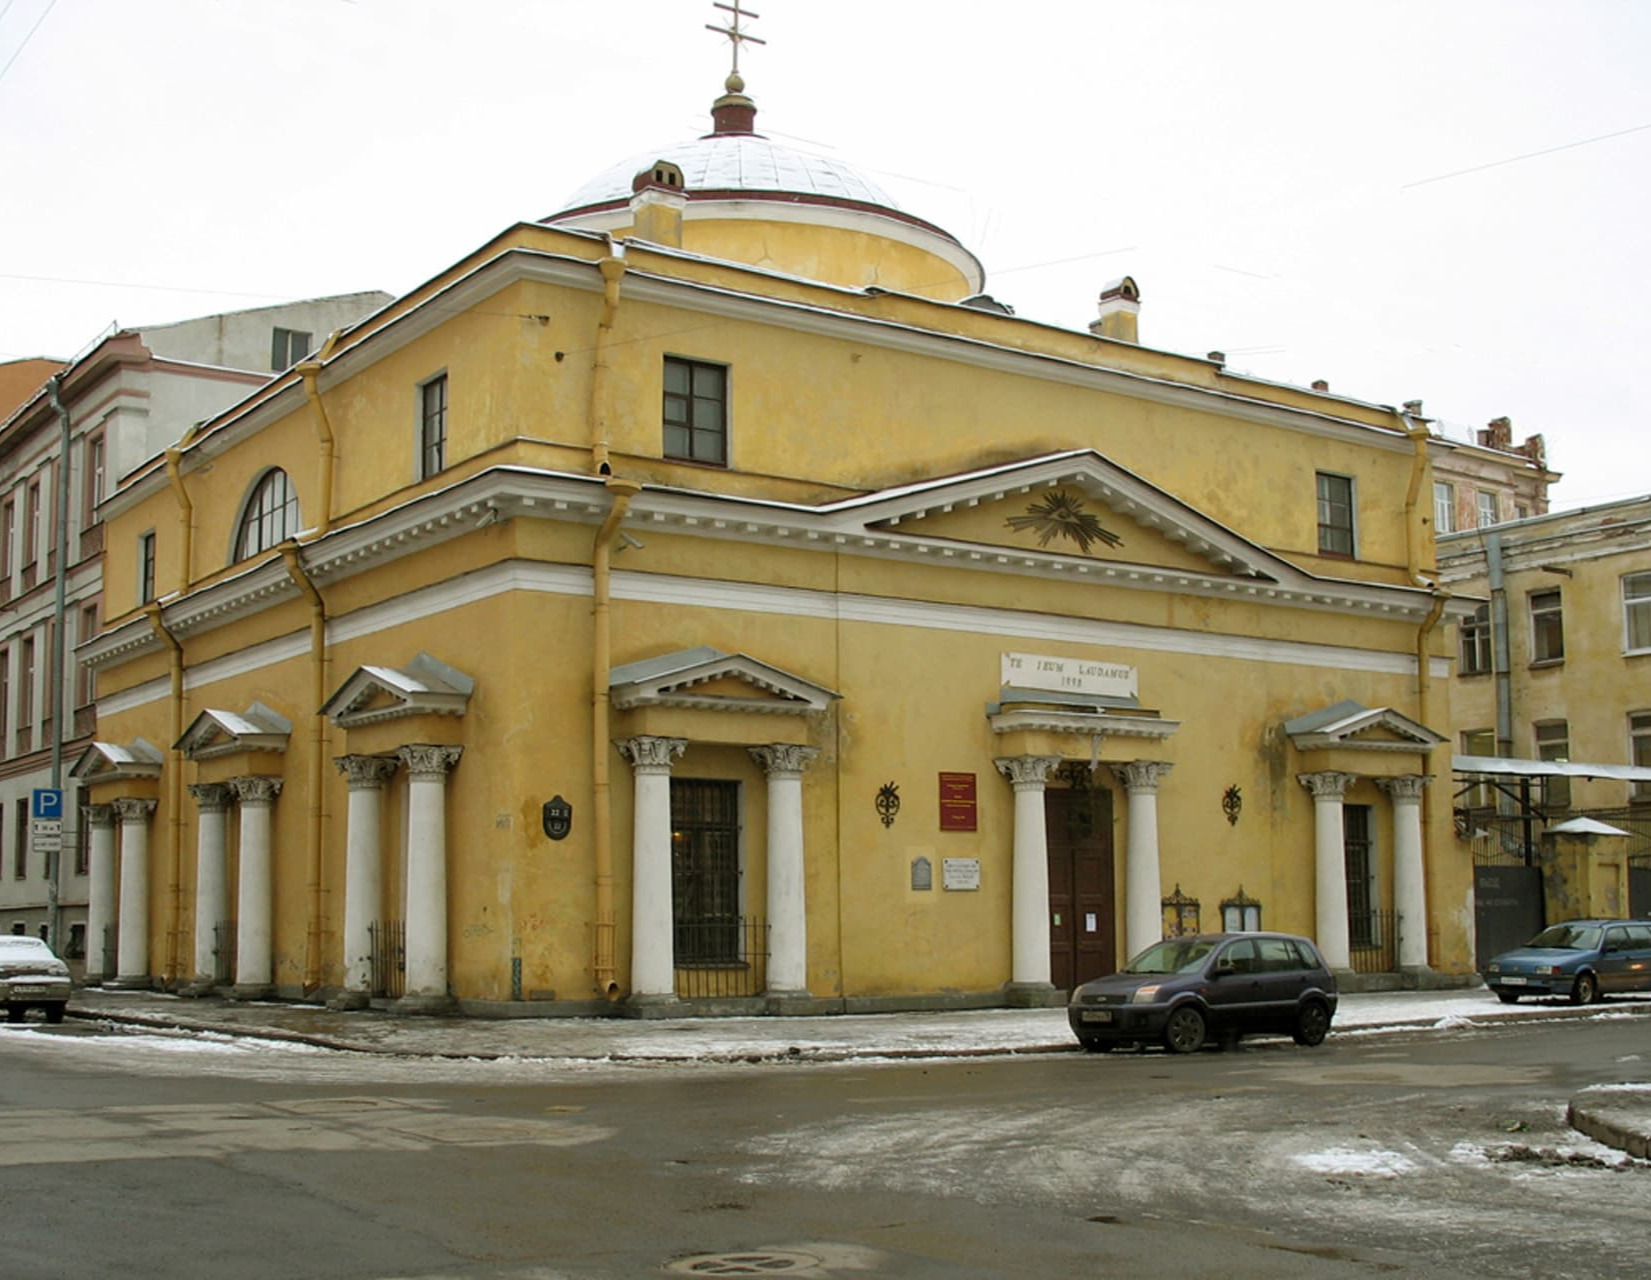 Храм Святого Станислава